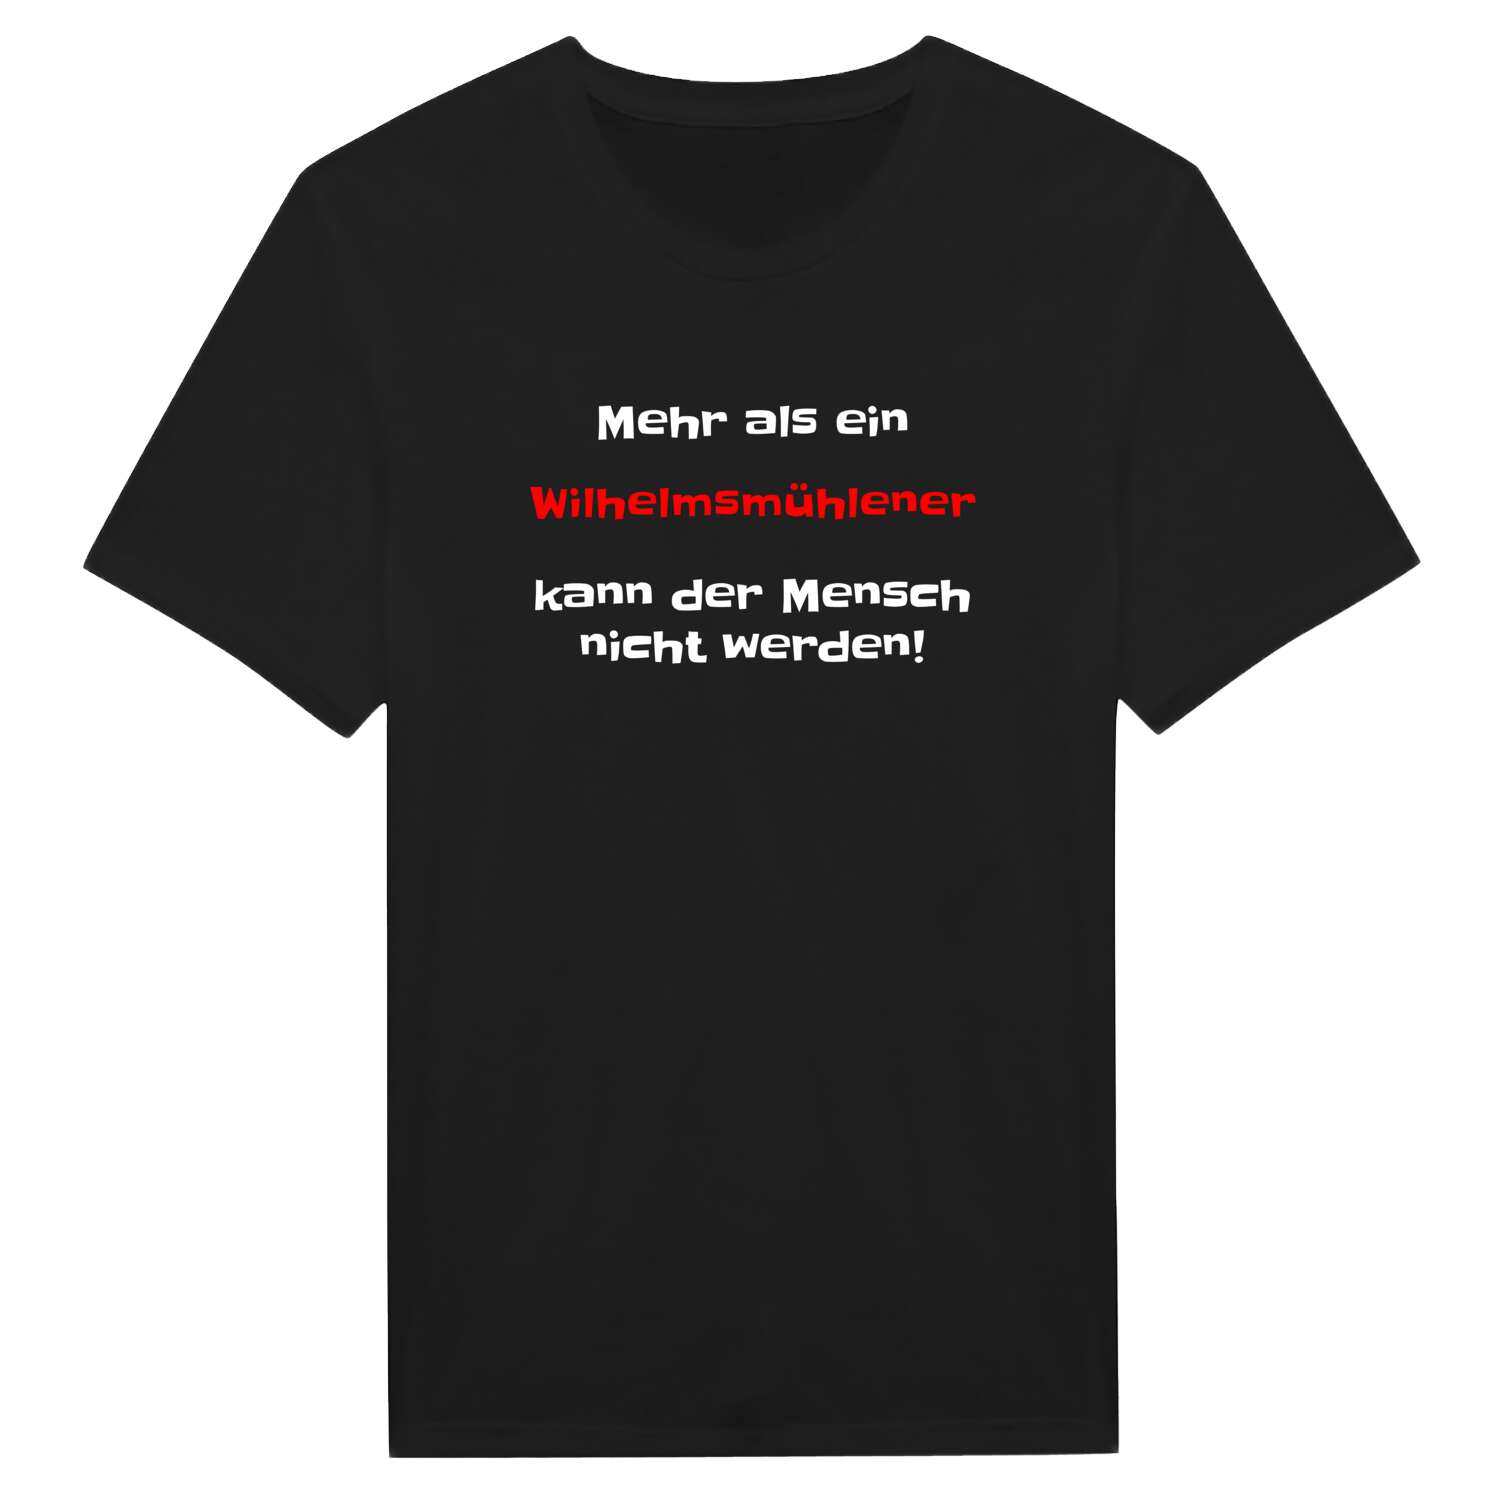 Wilhelmsmühle T-Shirt »Mehr als ein«